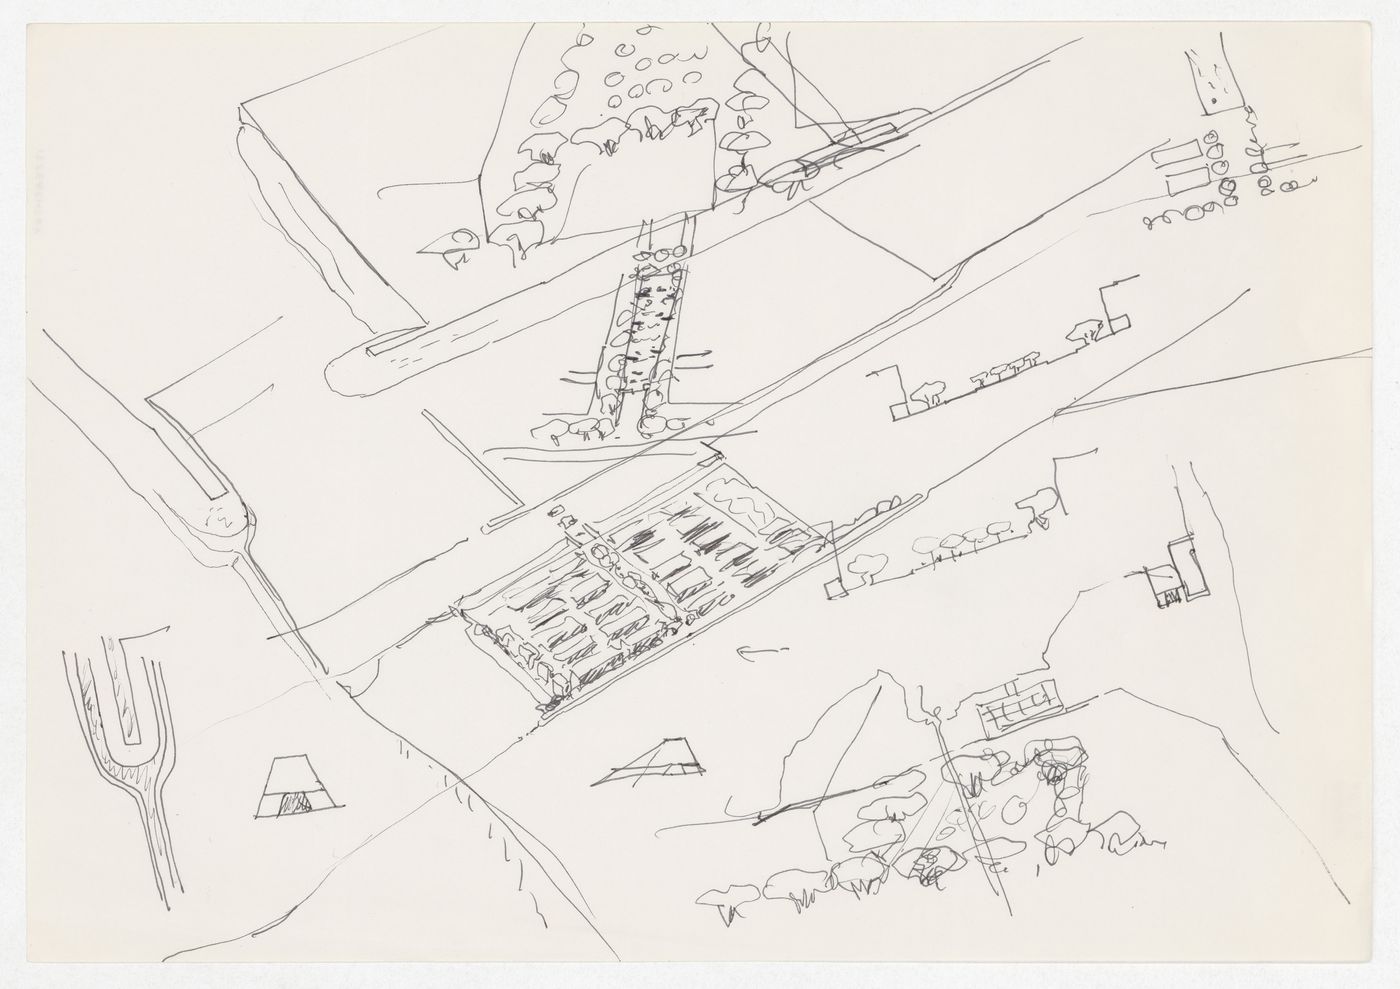 Sketch for Plano de Expansão da Cidade de Macau (Areia P. e Porto E.) [Macau City expansion plan], Macau, China